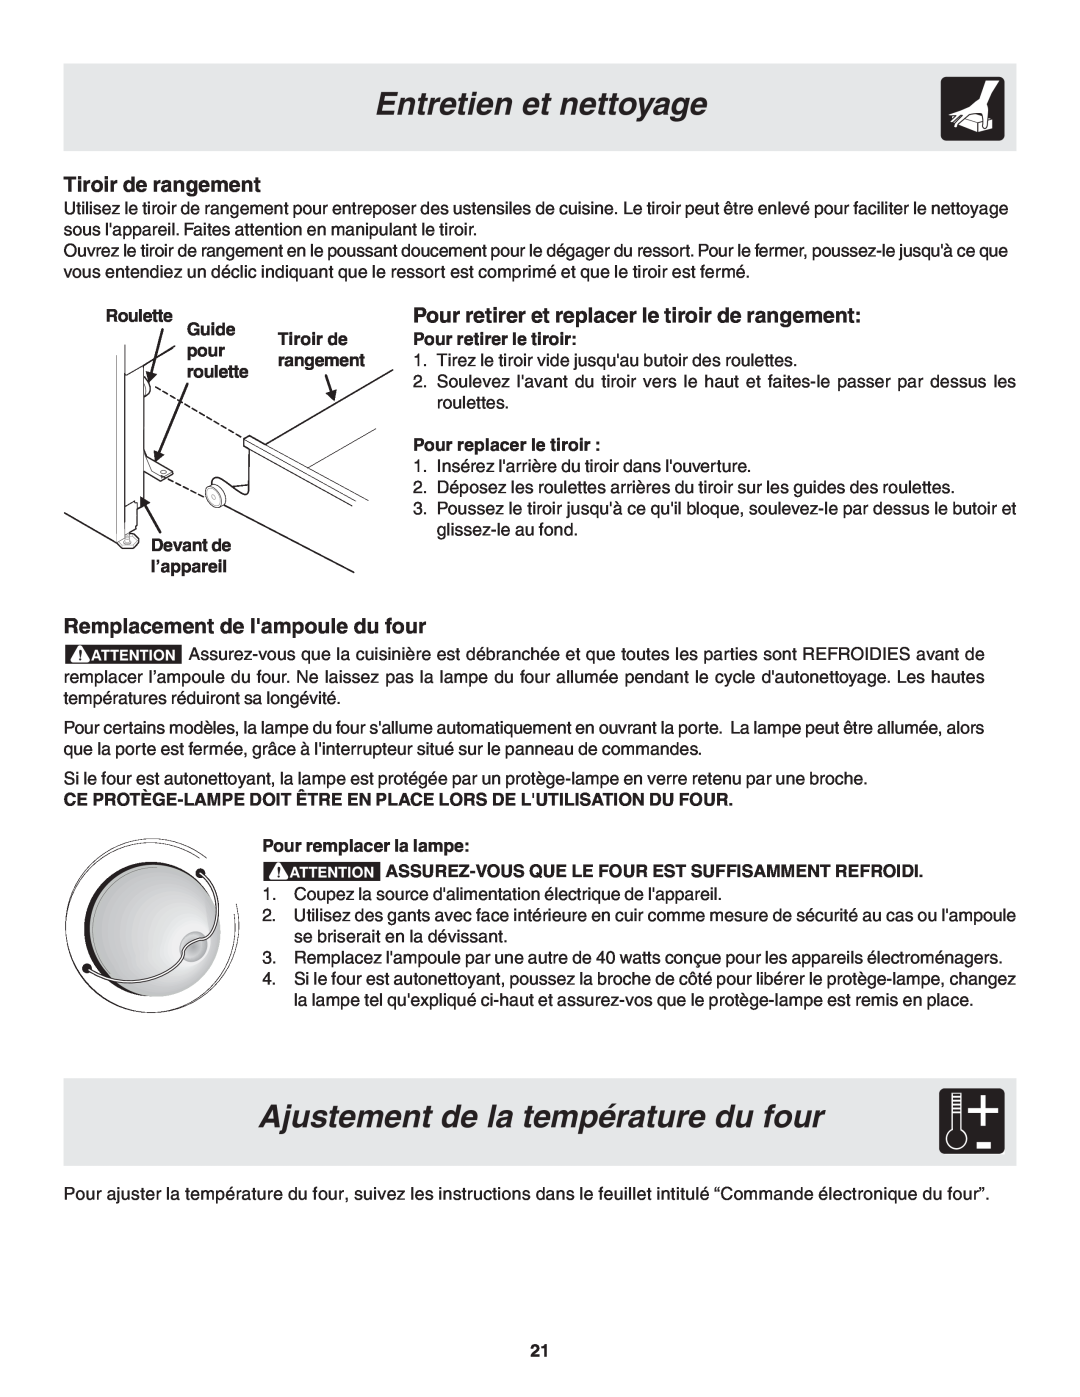 Frigidaire 318200879 Ajustement de la température du four, Entretien et nettoyage, Tiroir de rangement, Roulette, Guide 